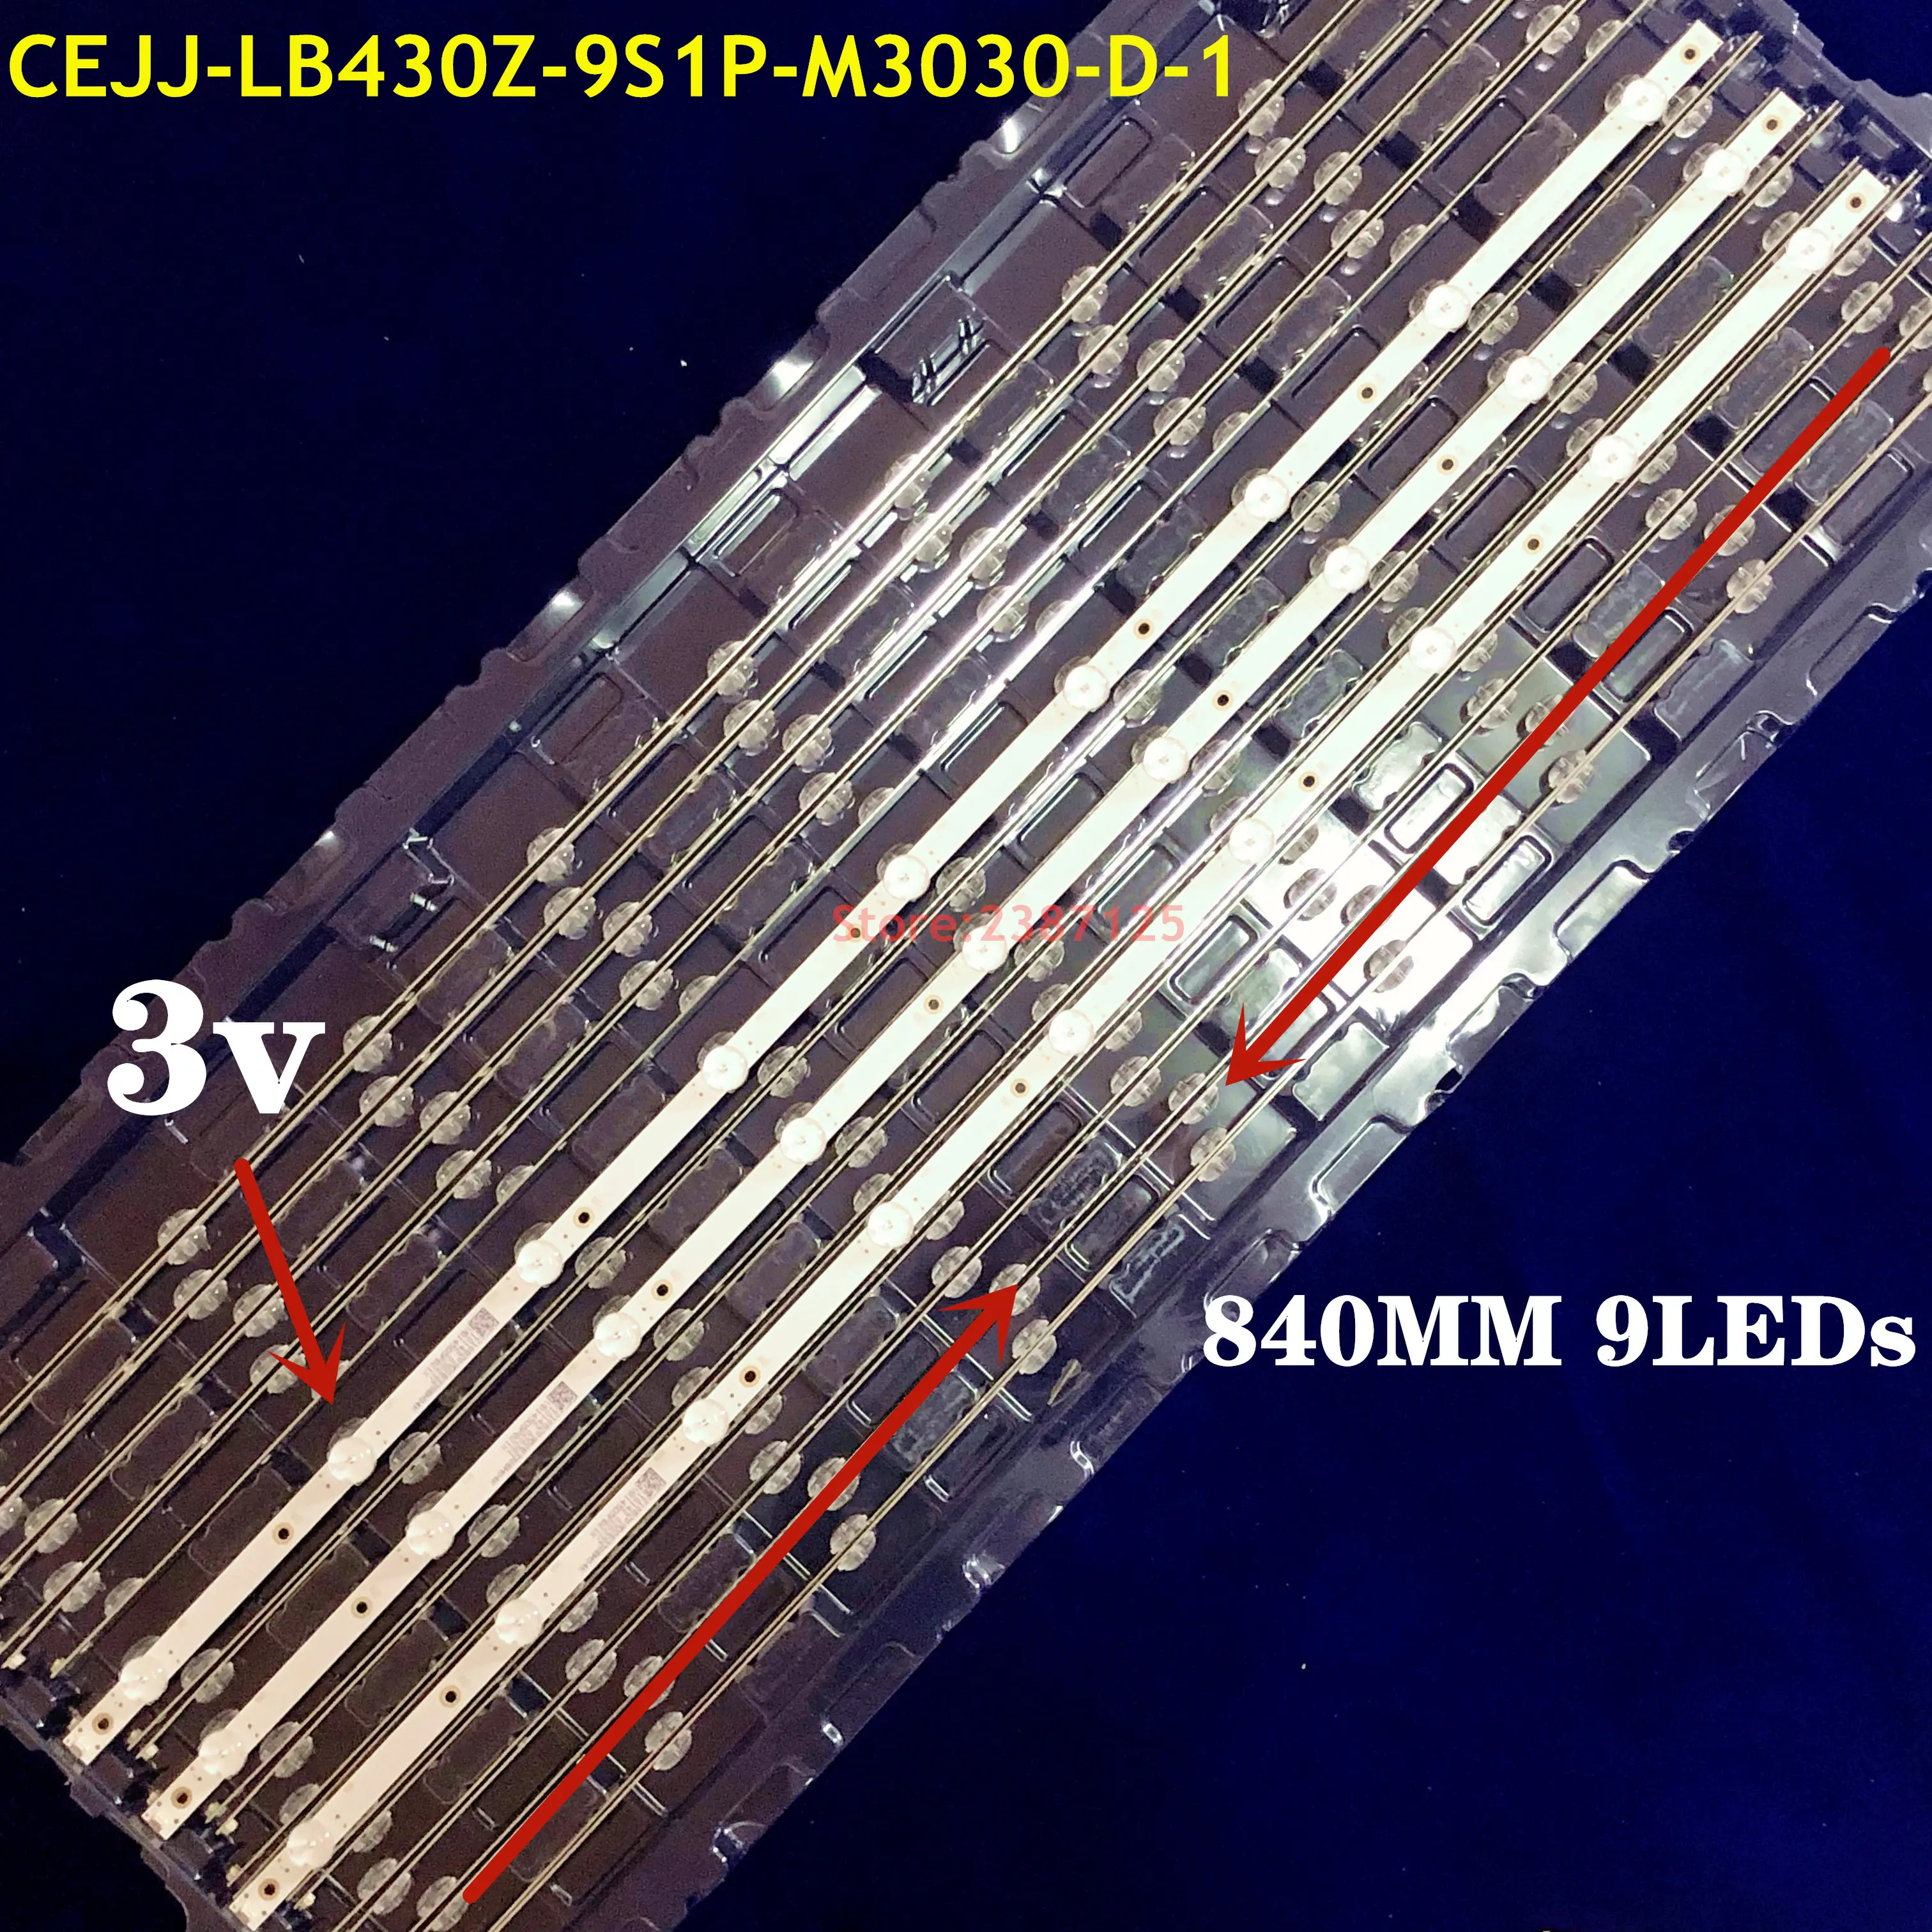 Jauns 30PCS LED Apgaismojums sloksnes 9LED(3 v) CEJJ-LB430Z-9S1P-M3030-D-1 Aoc 43s5295 43PFG5813/78 43PFF5292 43PFF3212/T3